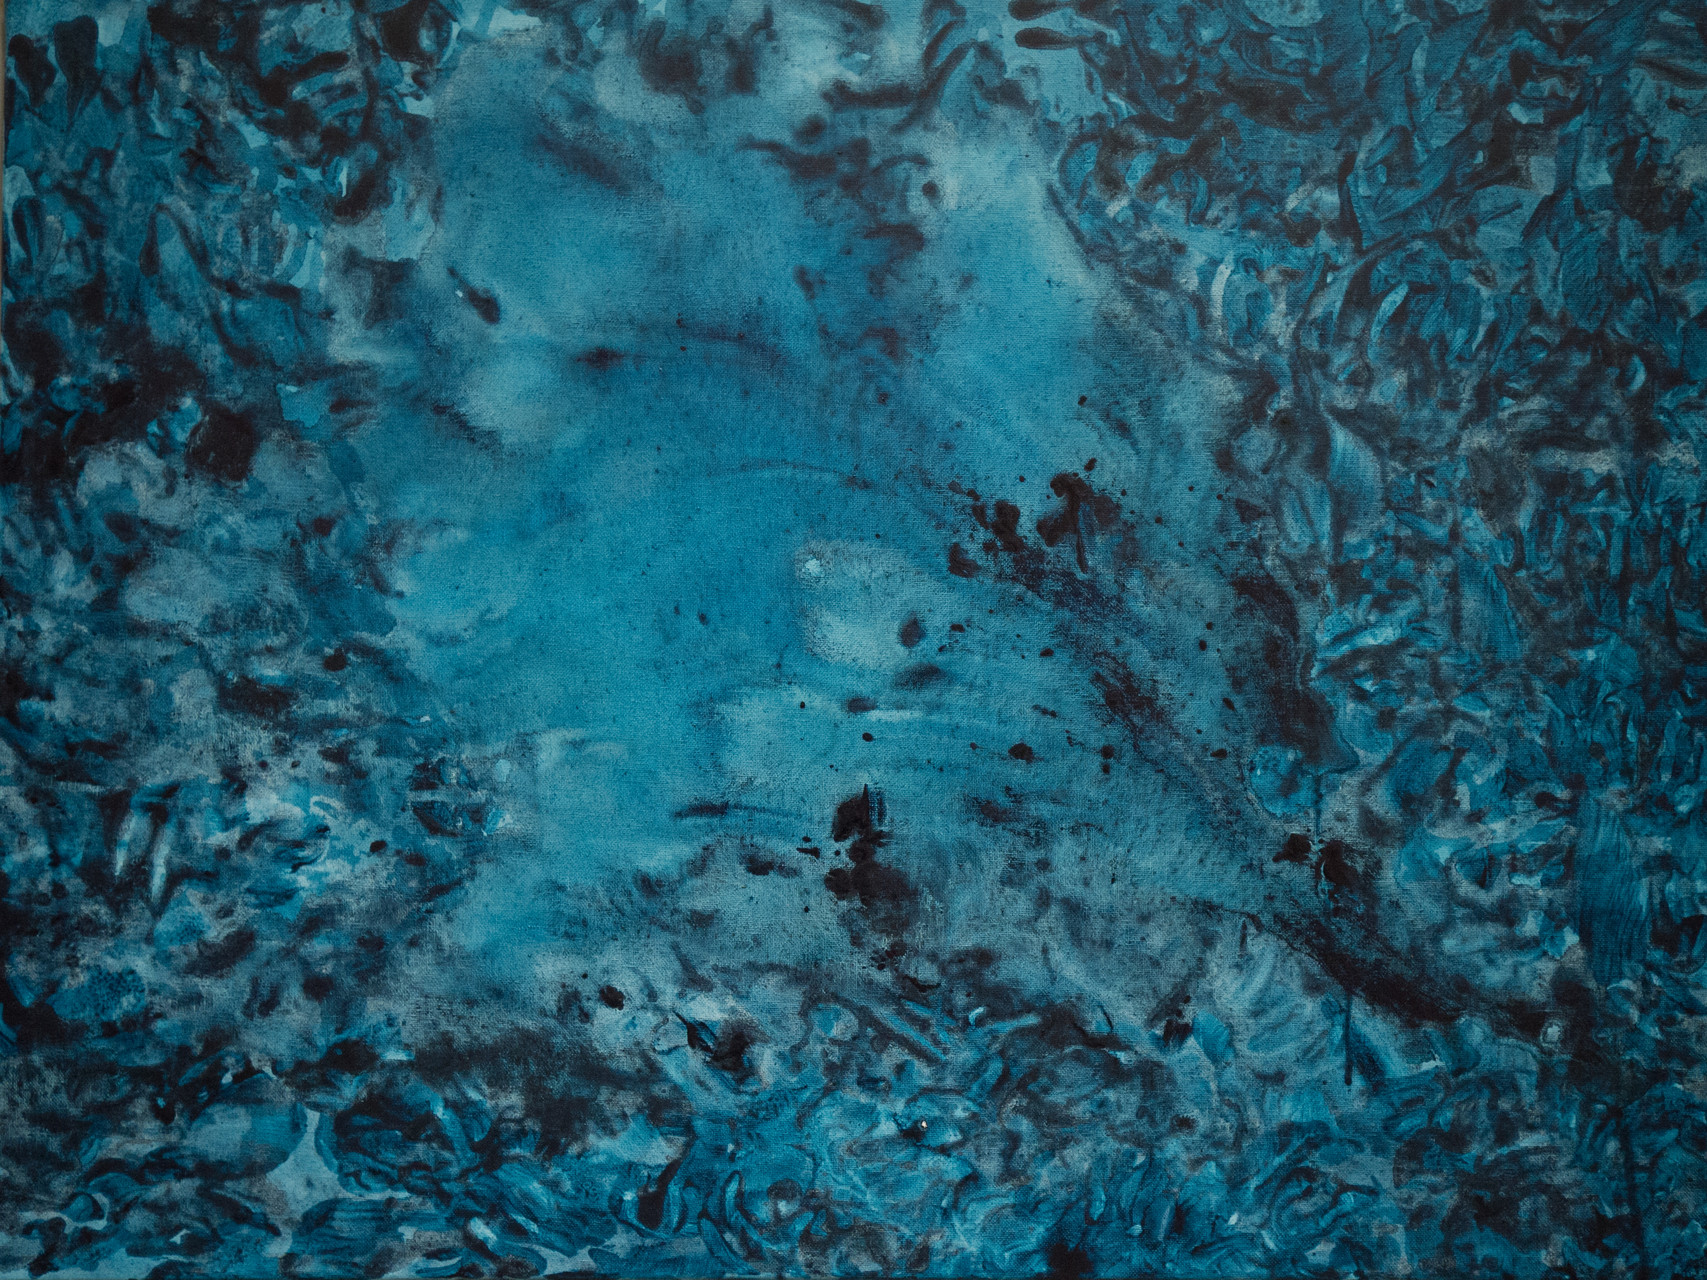 2013 Blaue Dimension - Leinwand 60x80cm